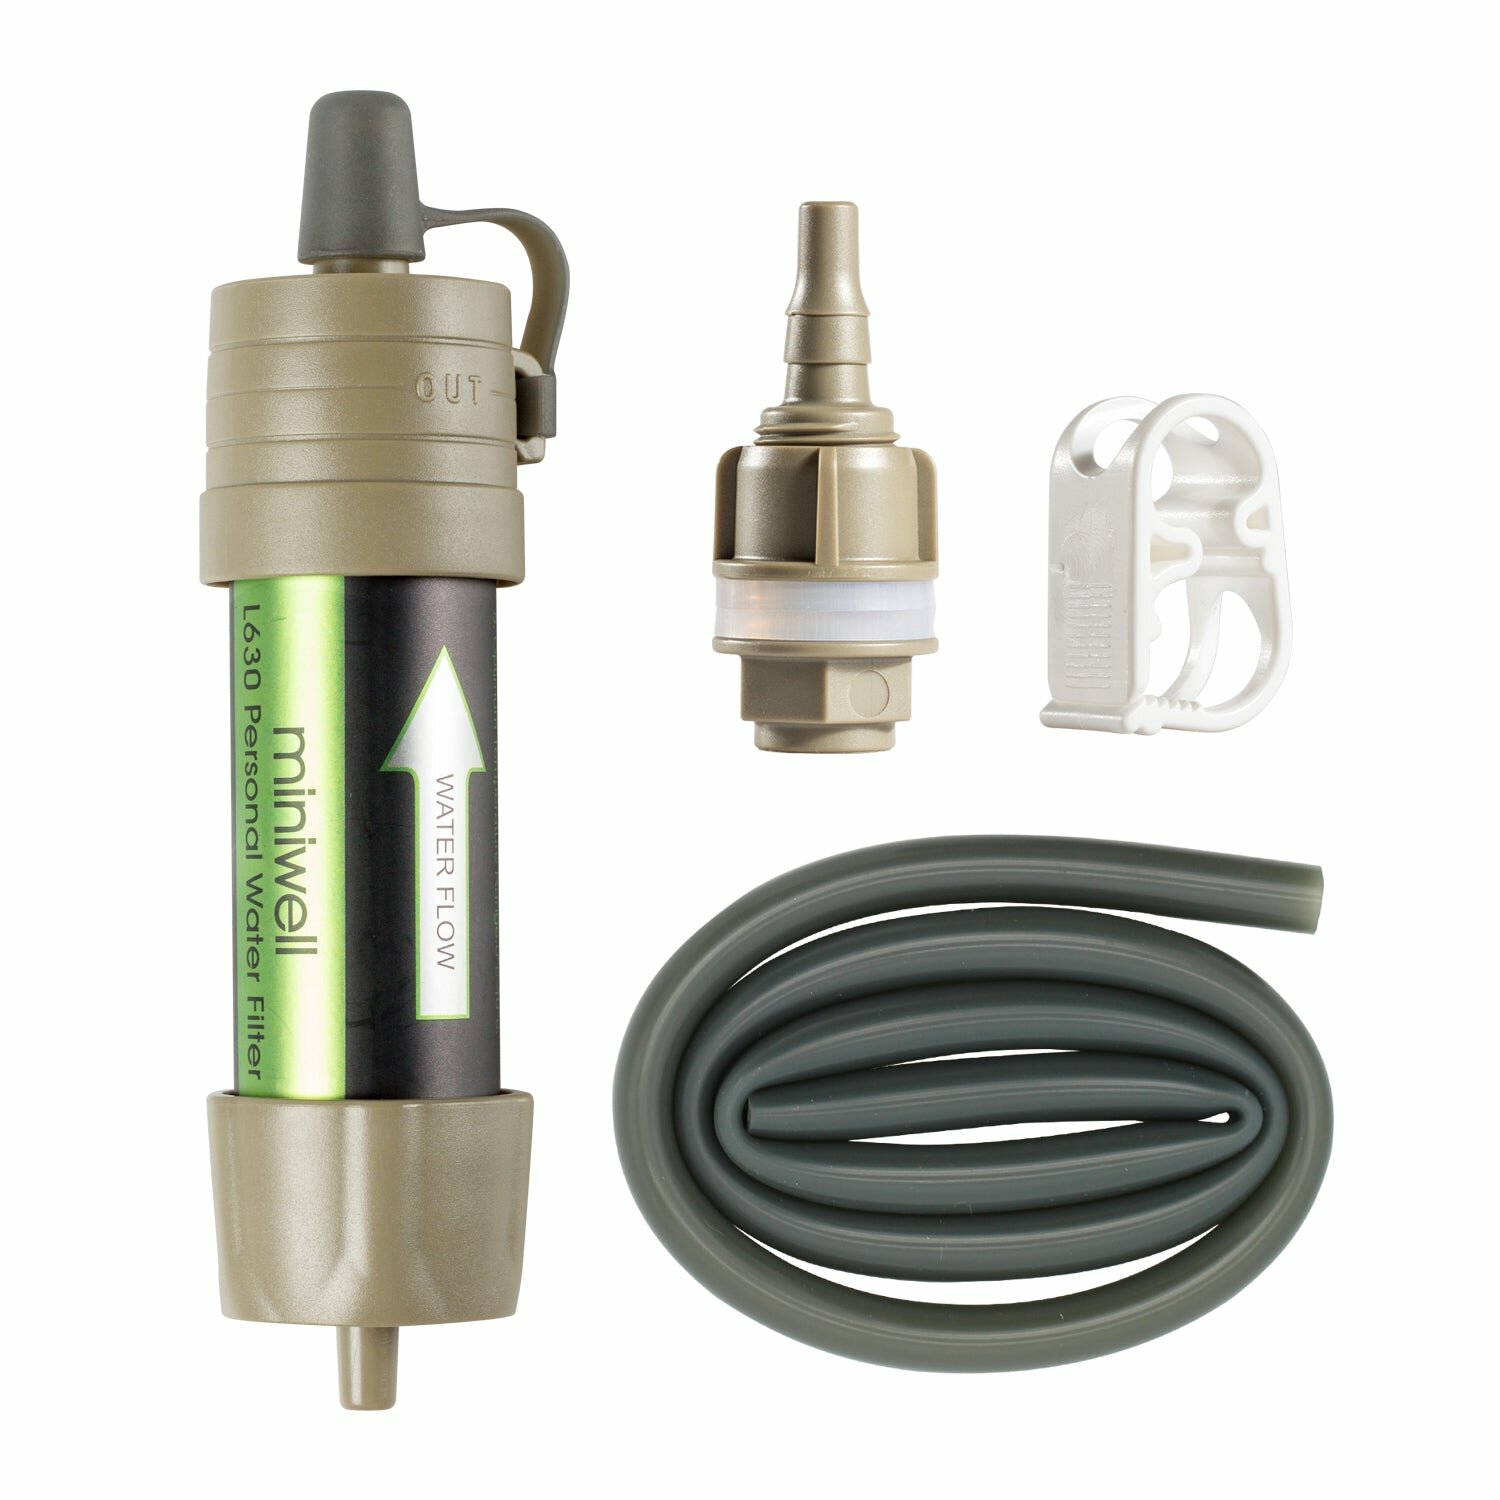 Фильтр туристический для воды Miniwell L630/углеродный фильтр/чистая питьевая вода/походный/от бактерий/переносной/компактный/зажим/насадка